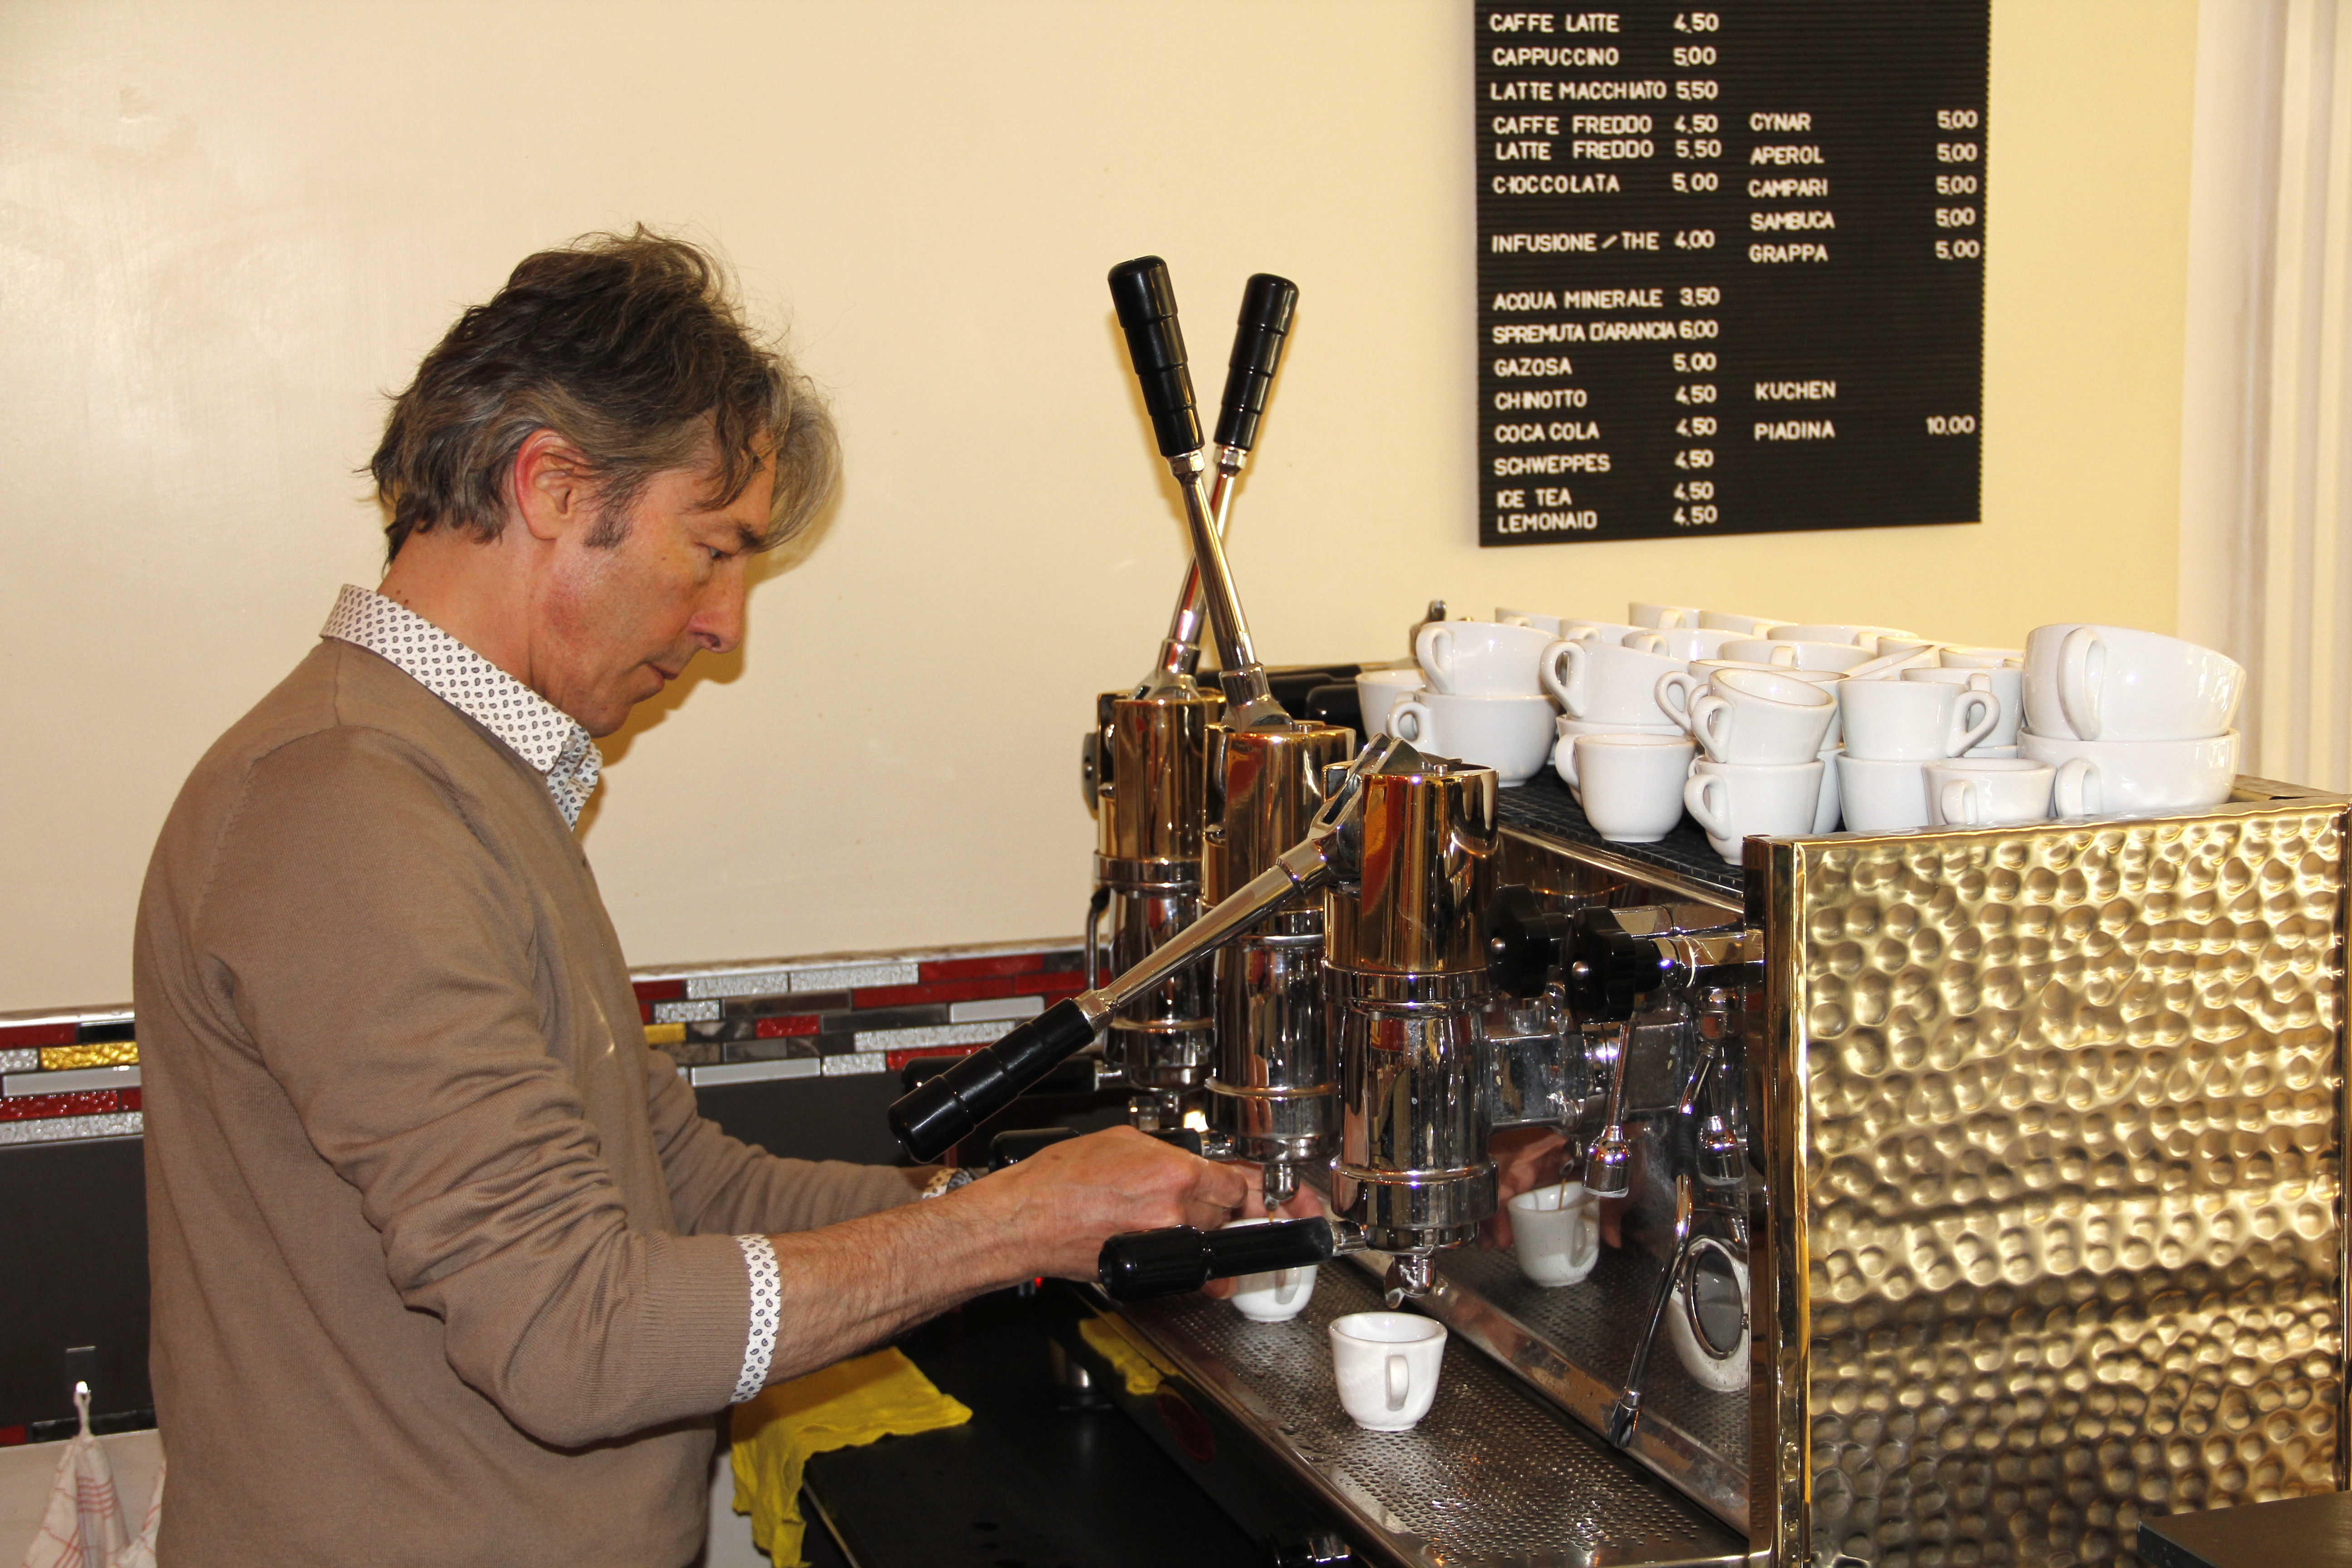 Der Barista und Espresso-Maschinentechniker Alfons Schuwey hat sich ganz auf traditionelles italienisches Handwerk spezialisiert. Der Espresso wird mit einer neapolitanischen «Bosco» gebrüht.